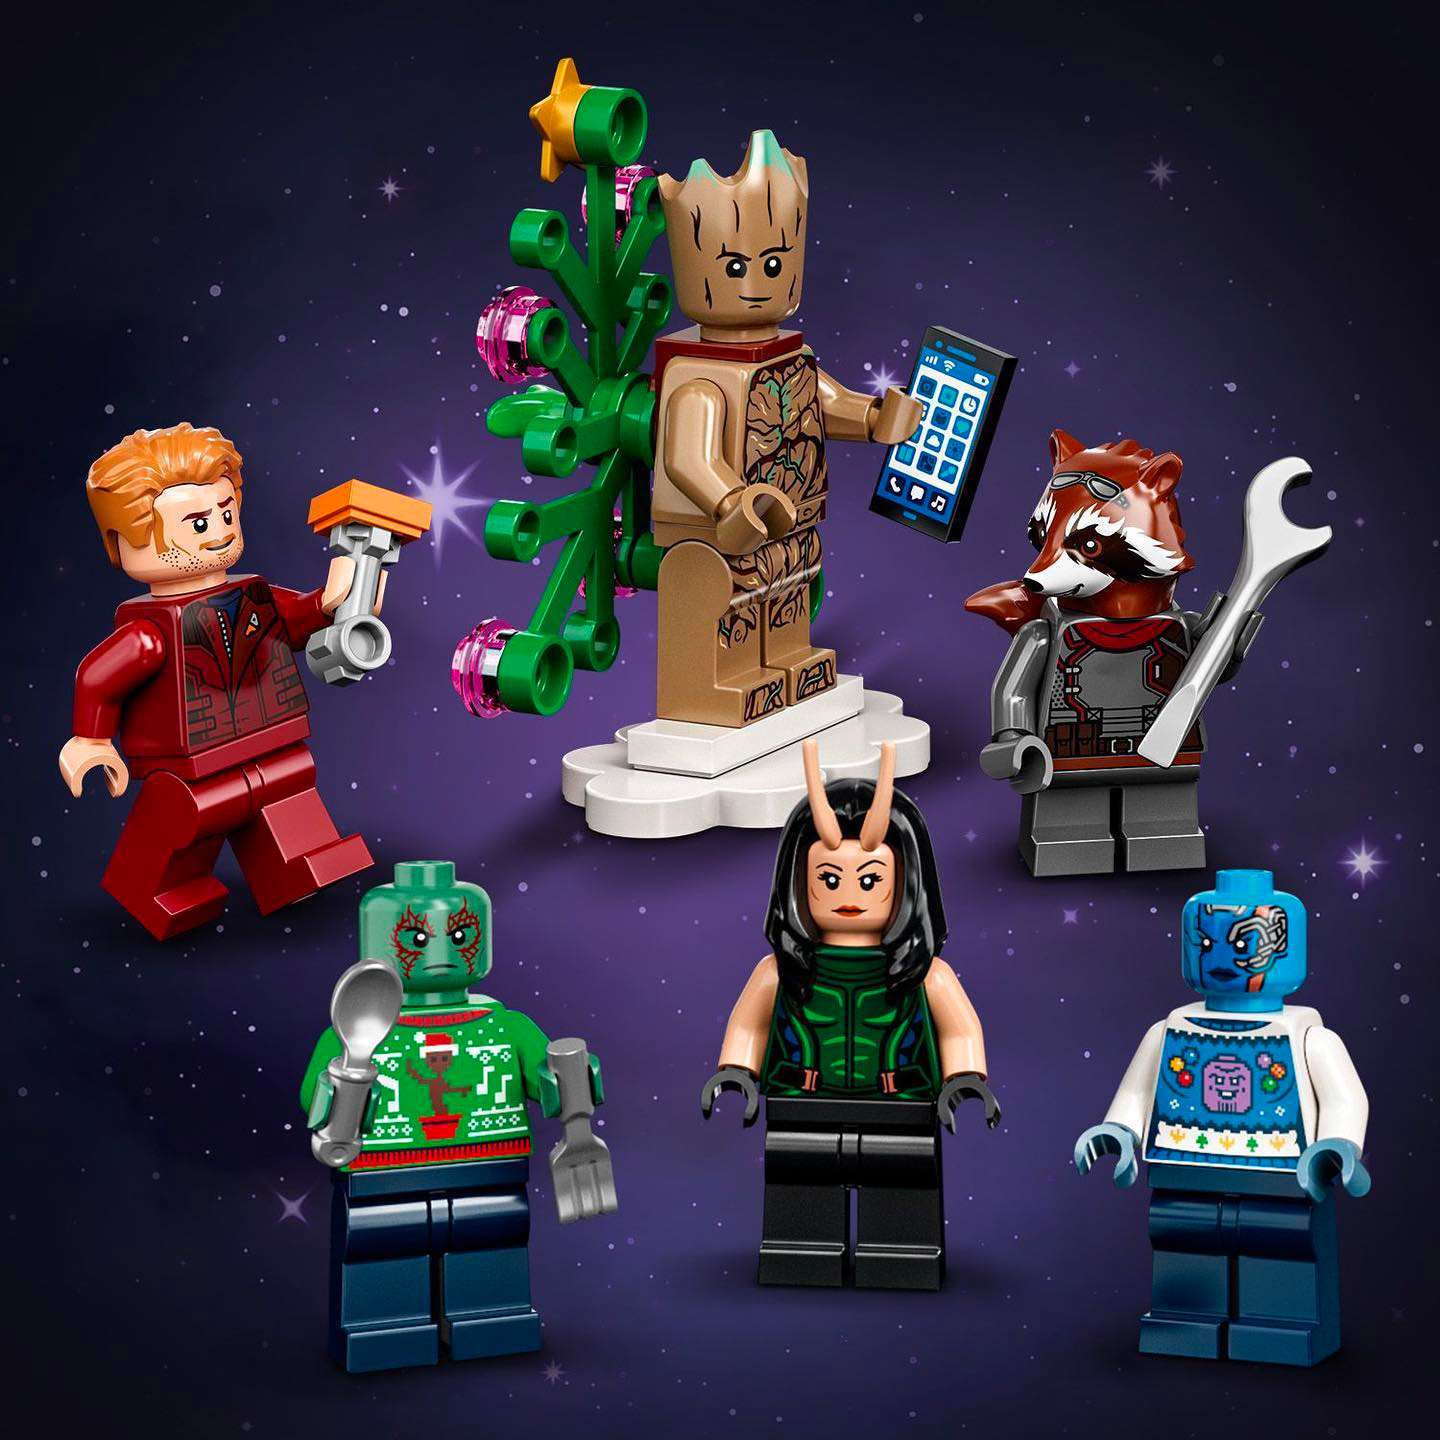 樂高積木 LEGO Super Heroes系列 76231 星際異攻隊聖誕降臨曆